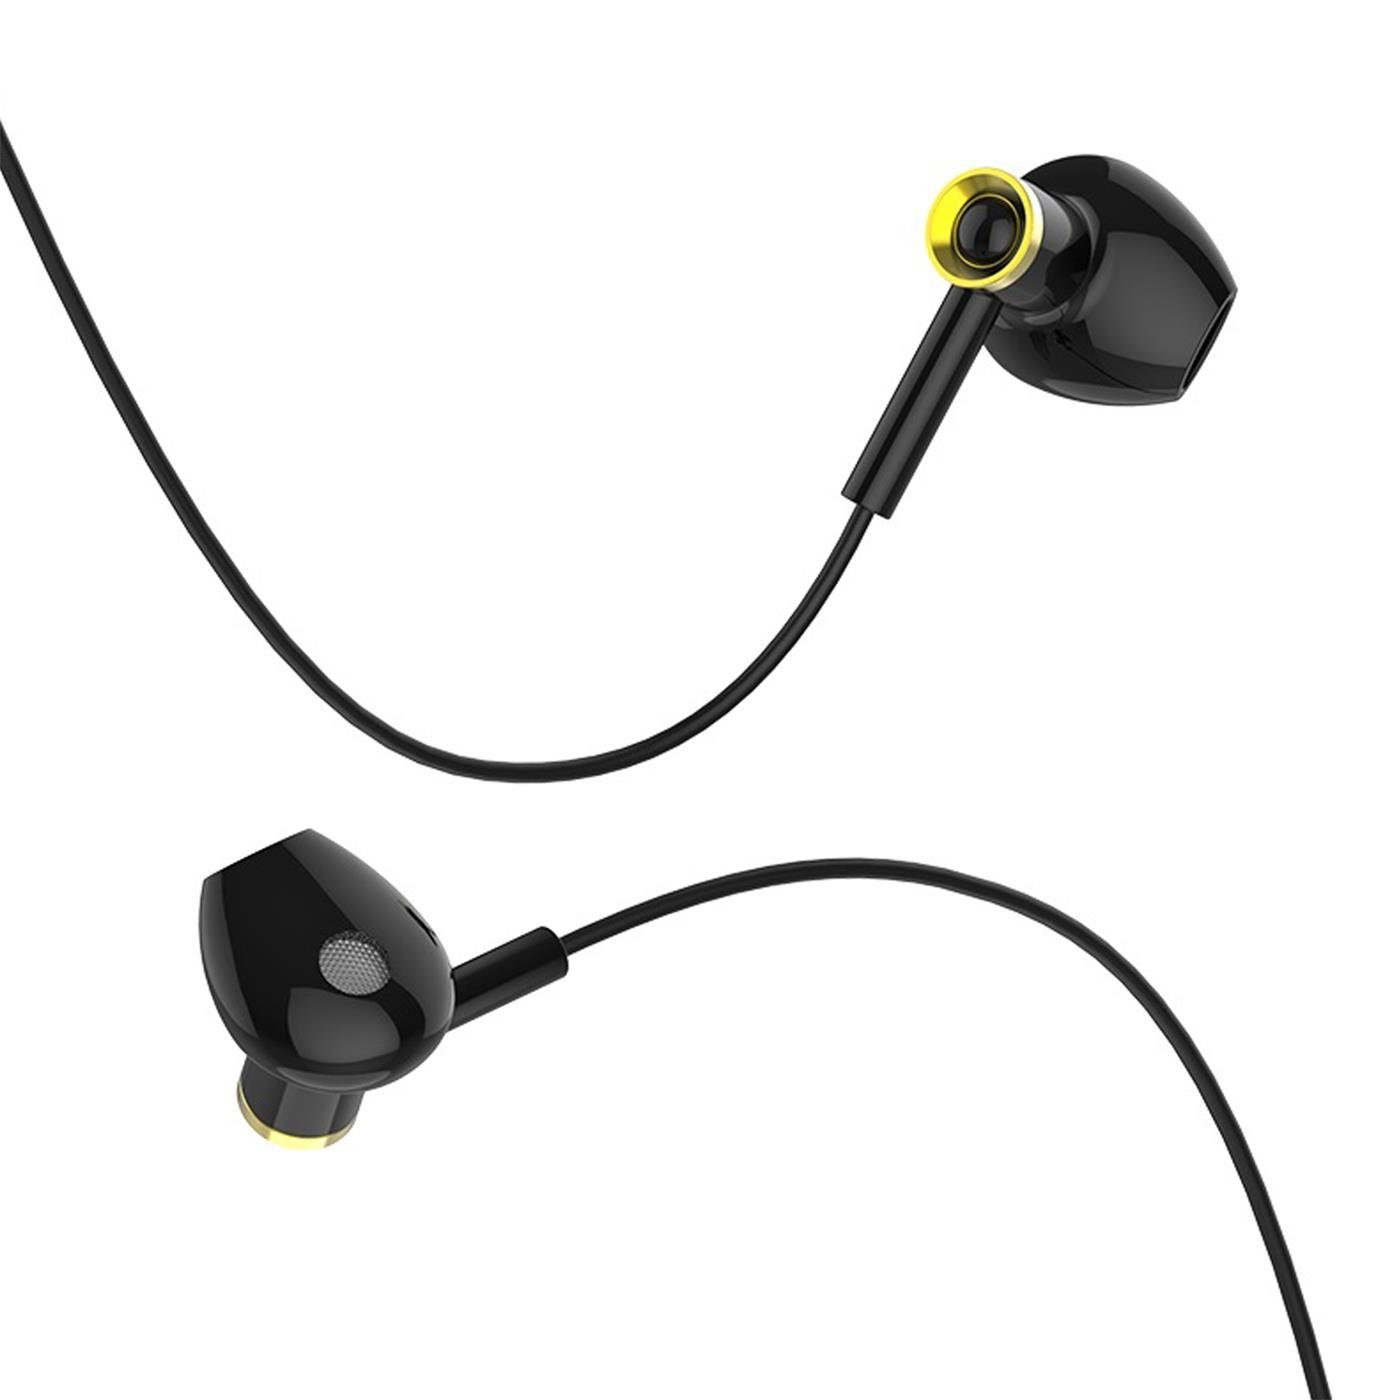 Klinke M47 In HOCO mm Beats) mit Mikrofon 3,5mm Schwarz Canorous Headset Klinke Smartphone-Headset (Köpfhörer 3.5 Ear